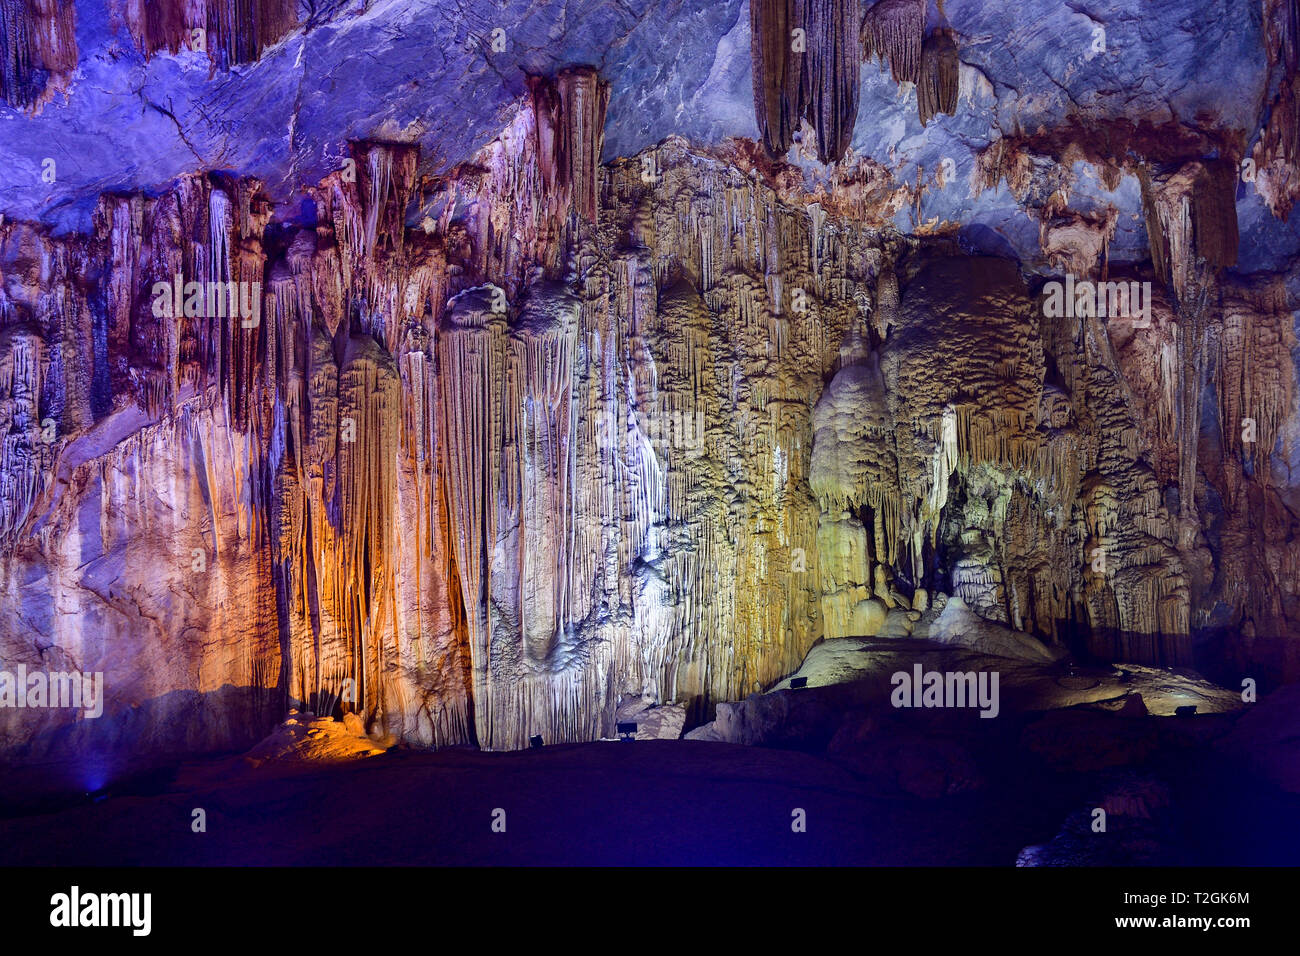 Sorprendentes formas geológicas en el Paraíso, cerca de la cueva de Phong Nha, Vietnam. La caliza cueva llena de estalactitas y estalagmitas. Foto de stock